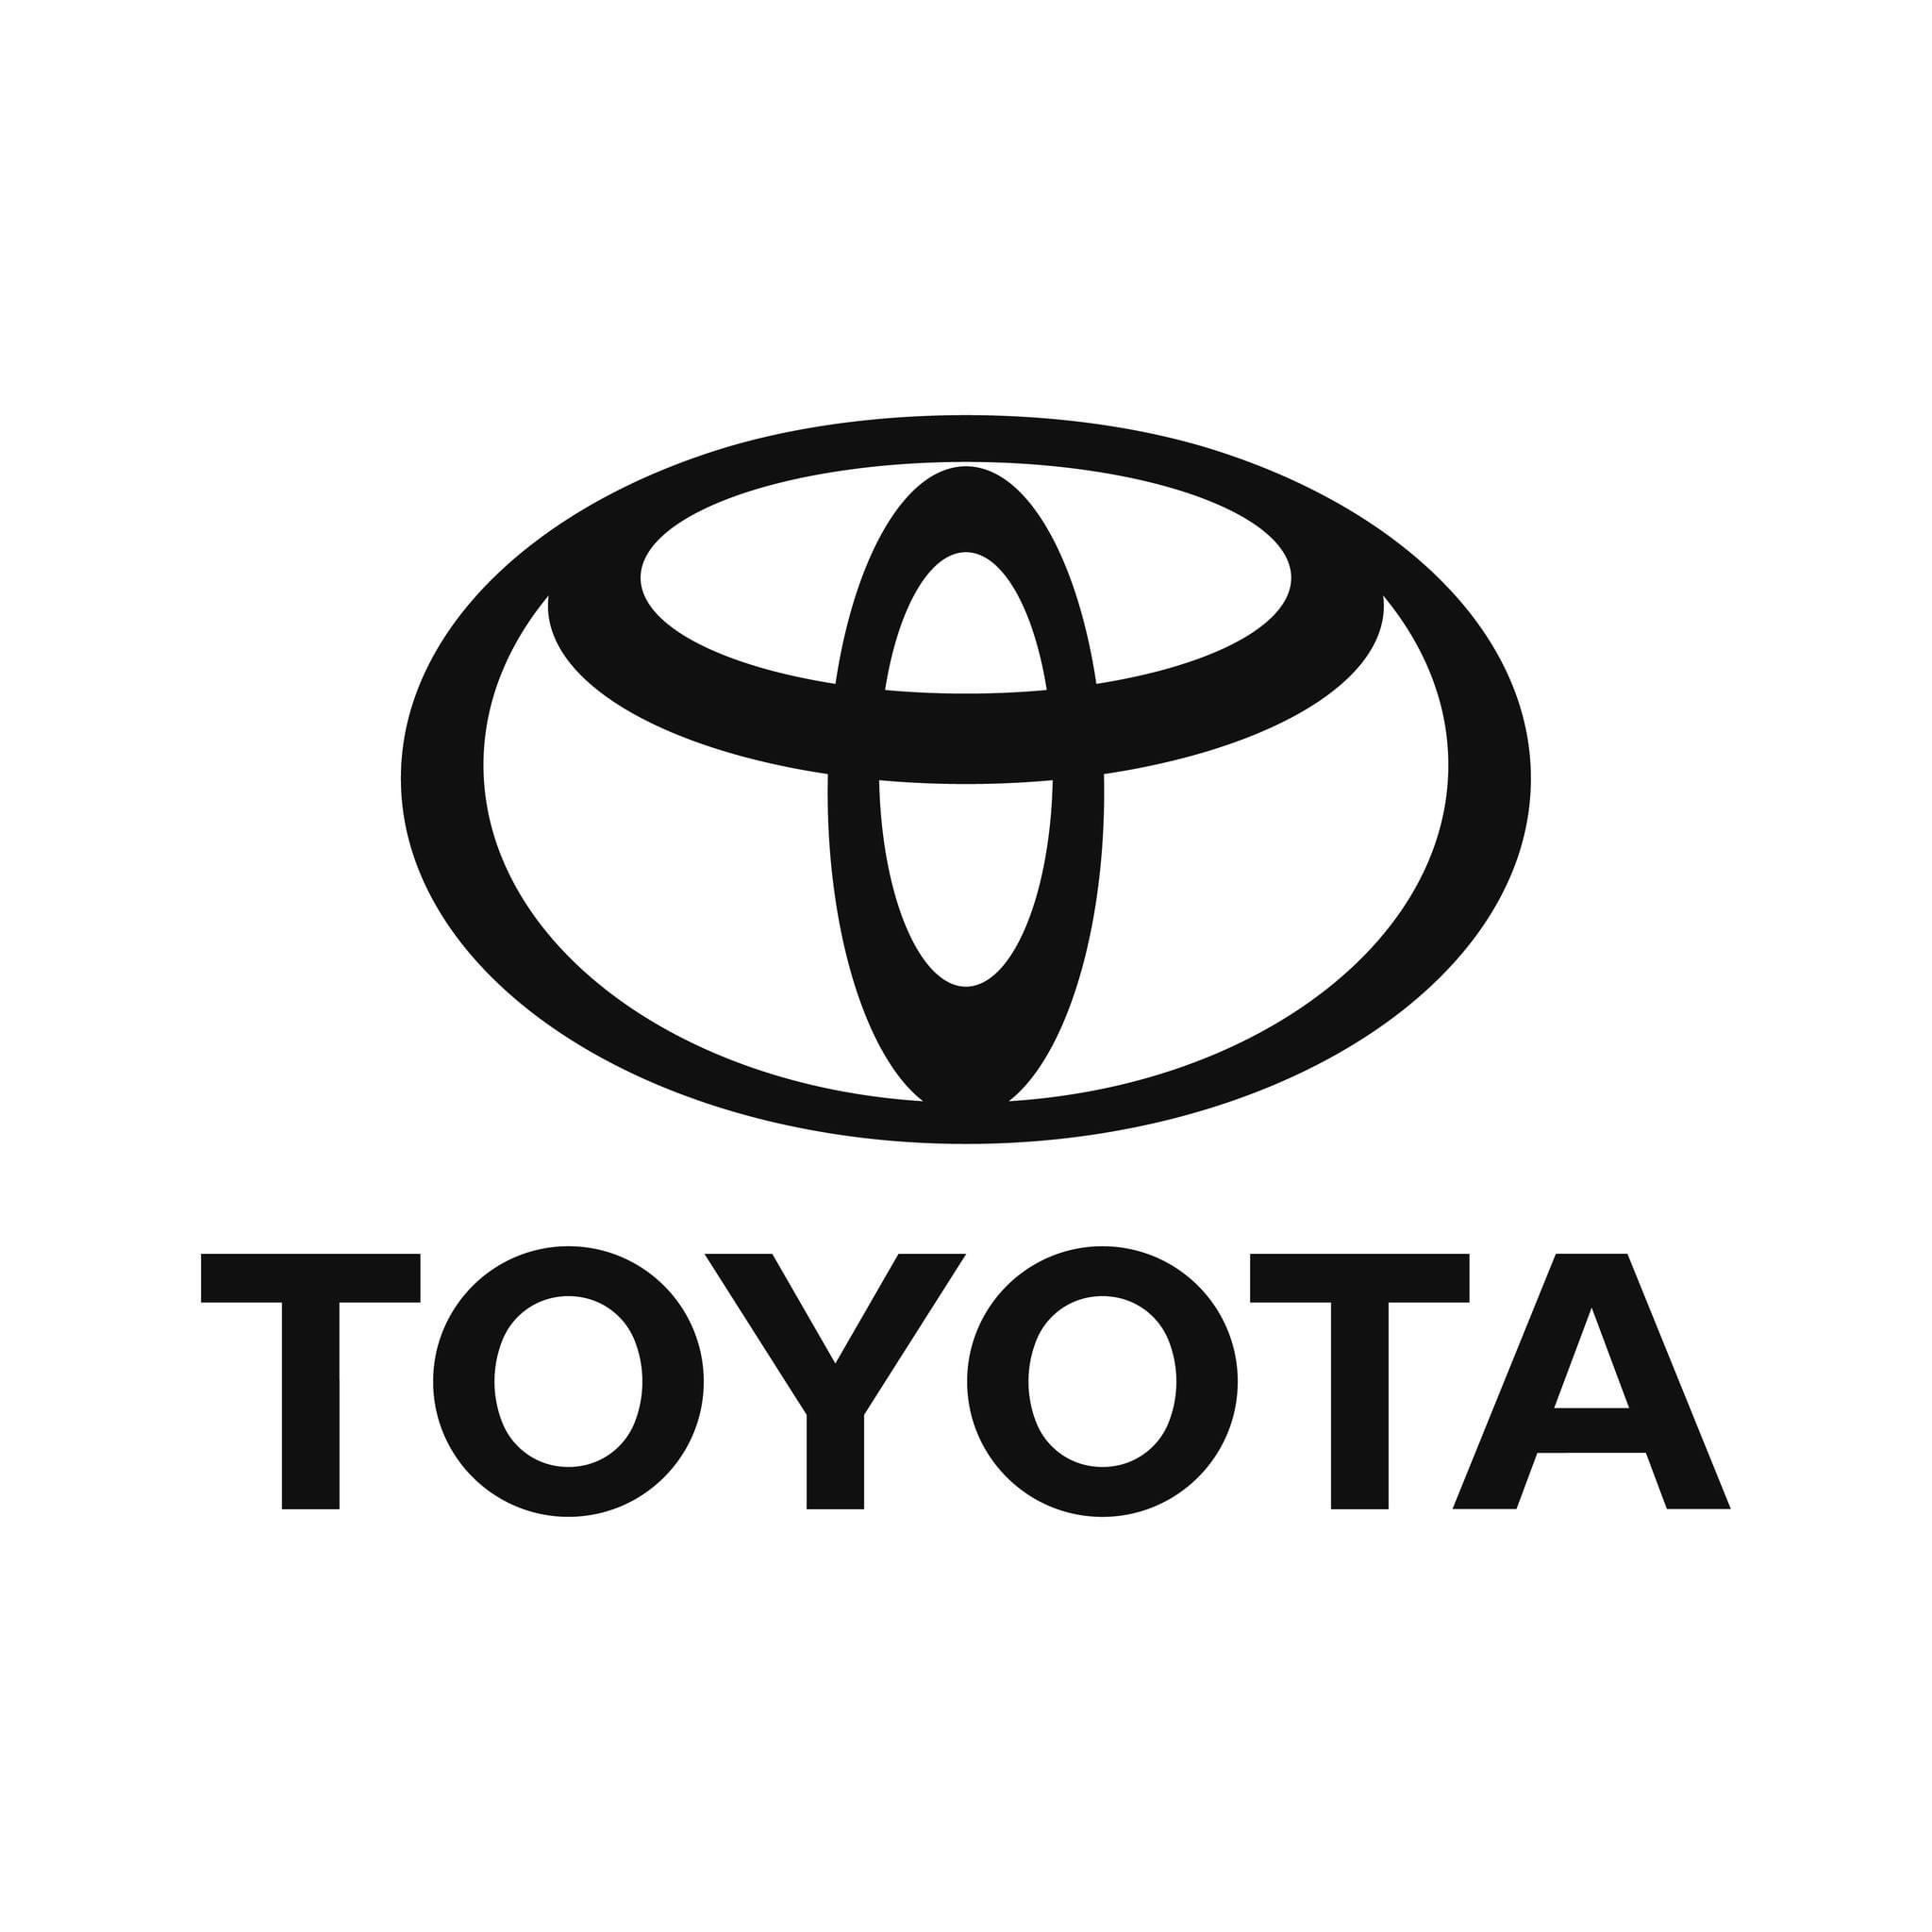 Công ty Ô tô Toyota Việt Nam